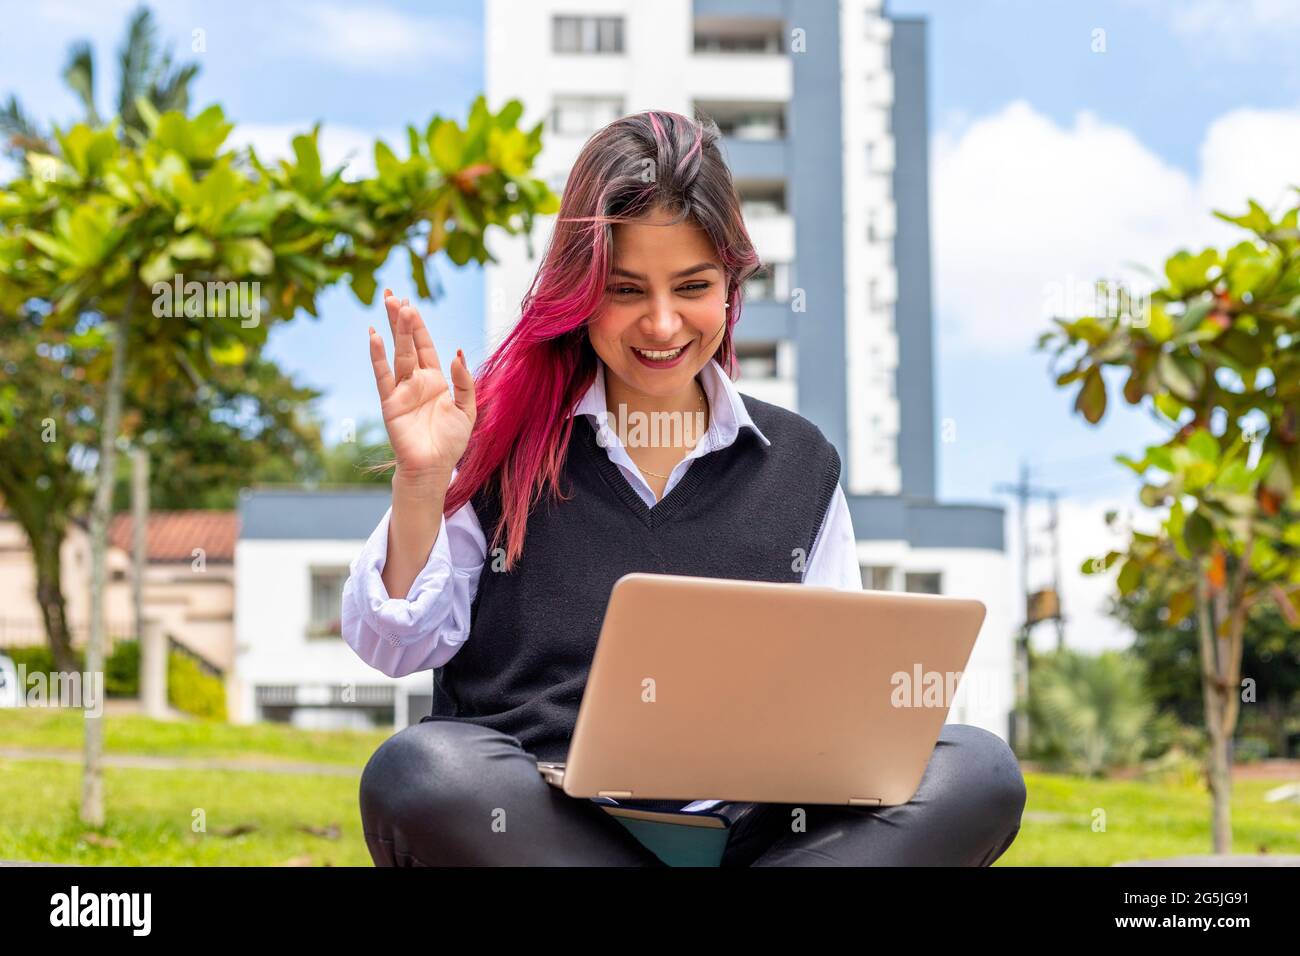 Junge Frau, die im Freien sitzt und auf dem Bildschirm ihres Laptops winkt Stockfoto